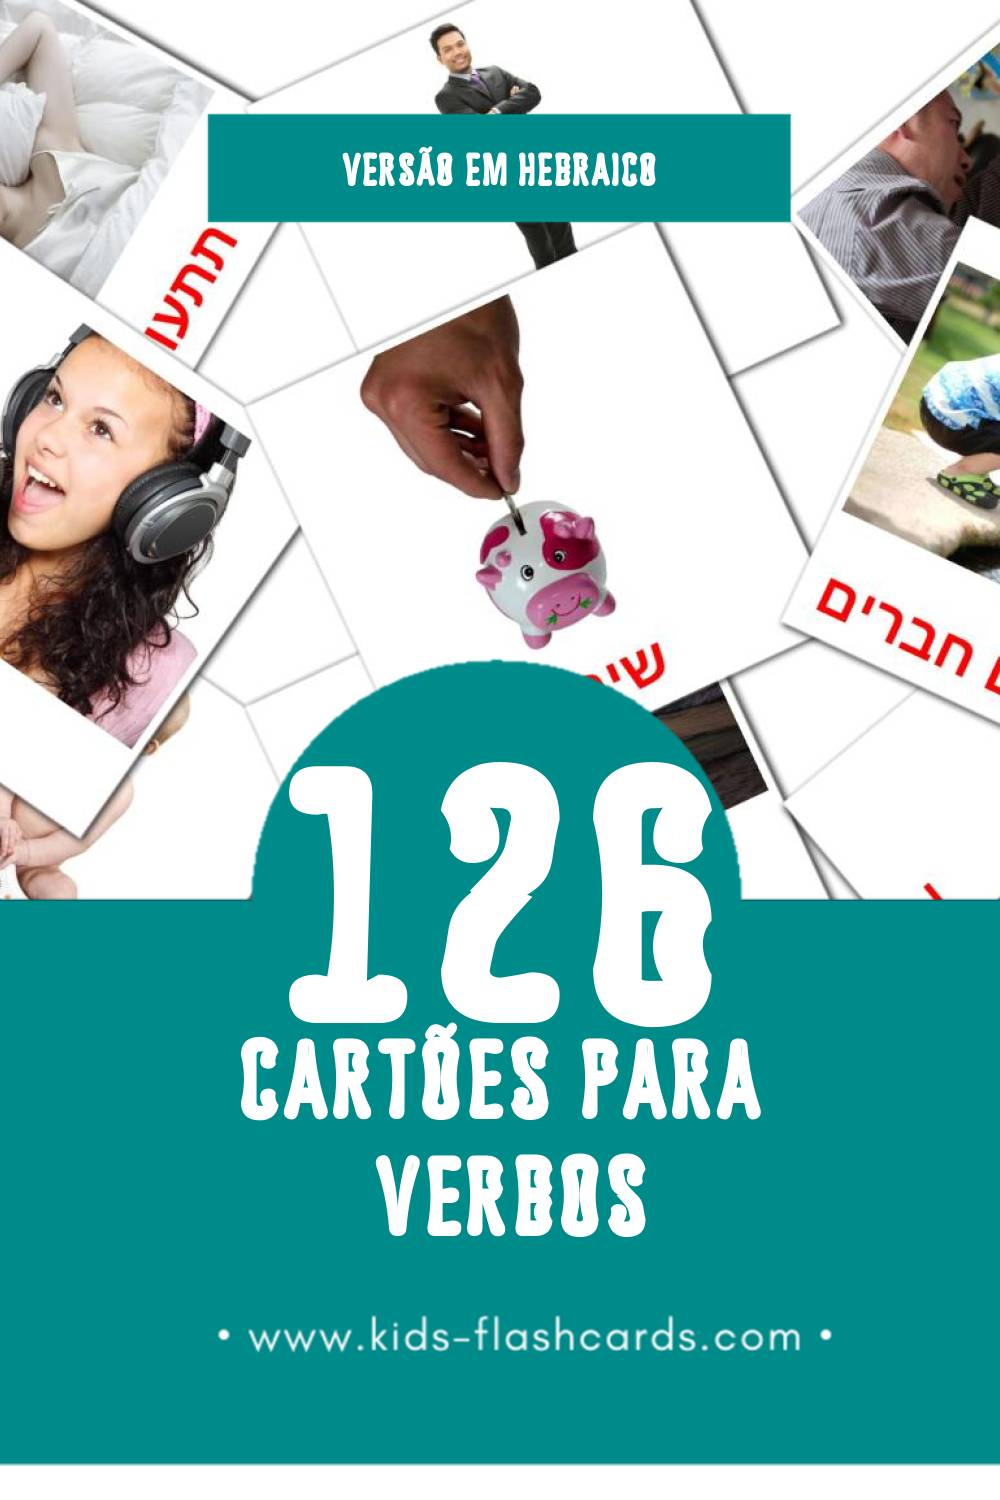 Flashcards de פעלים Visuais para Toddlers (126 cartões em Hebraico)